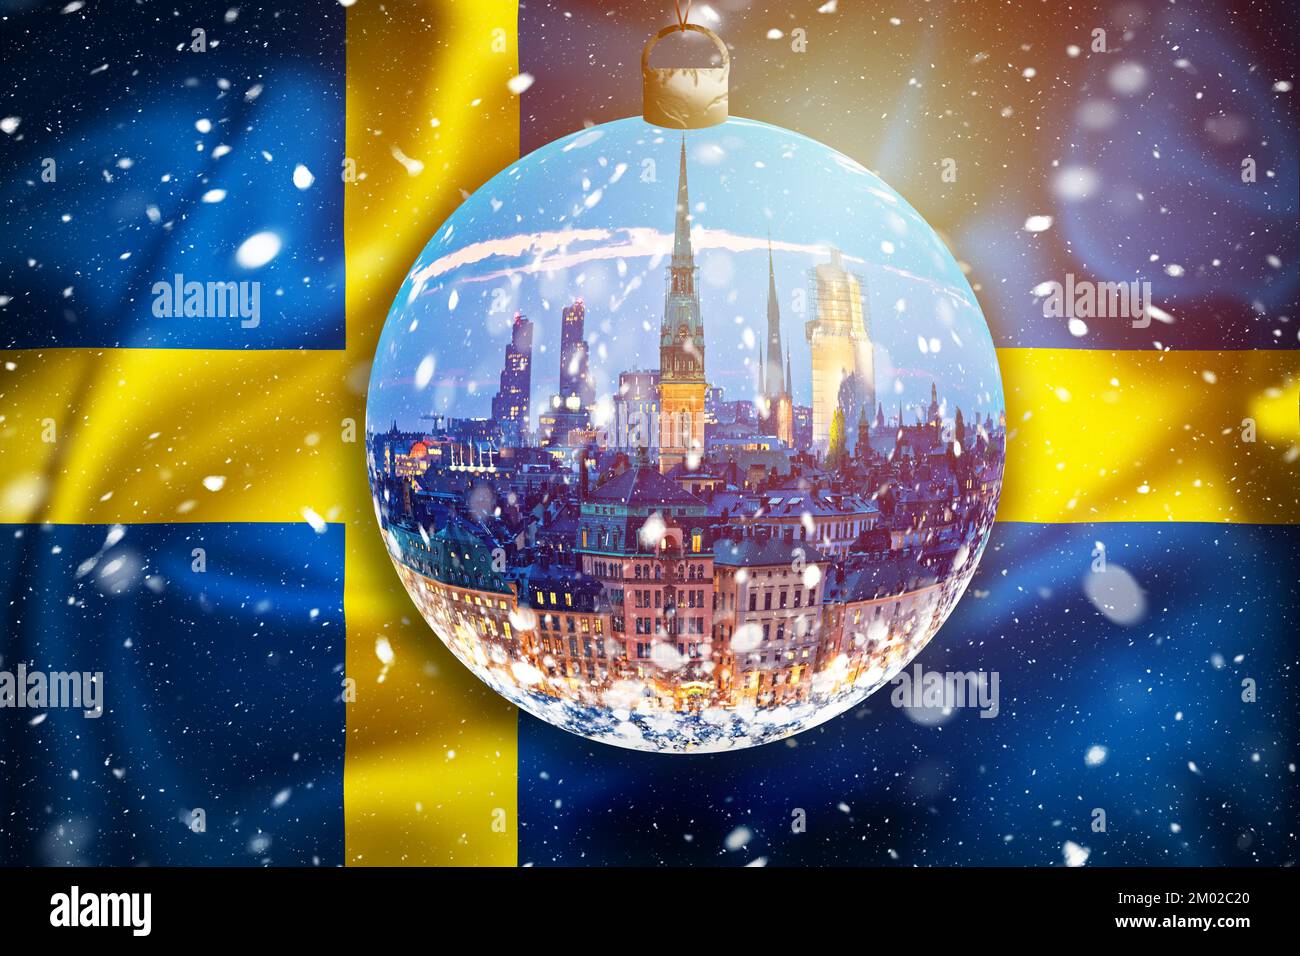 Bandiera svedese sera vista sulla neve attraverso la palla di vetro di natale, periodo natalizio nella capitale della Svezia Foto Stock